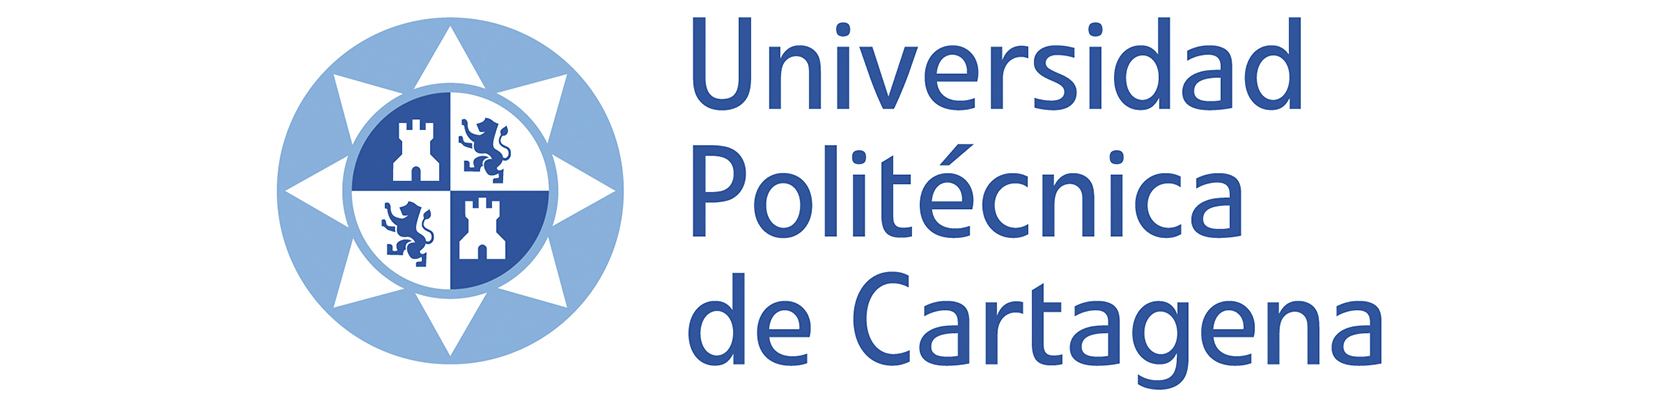 Logotipo de la Universidad Politécnica de Cartagena